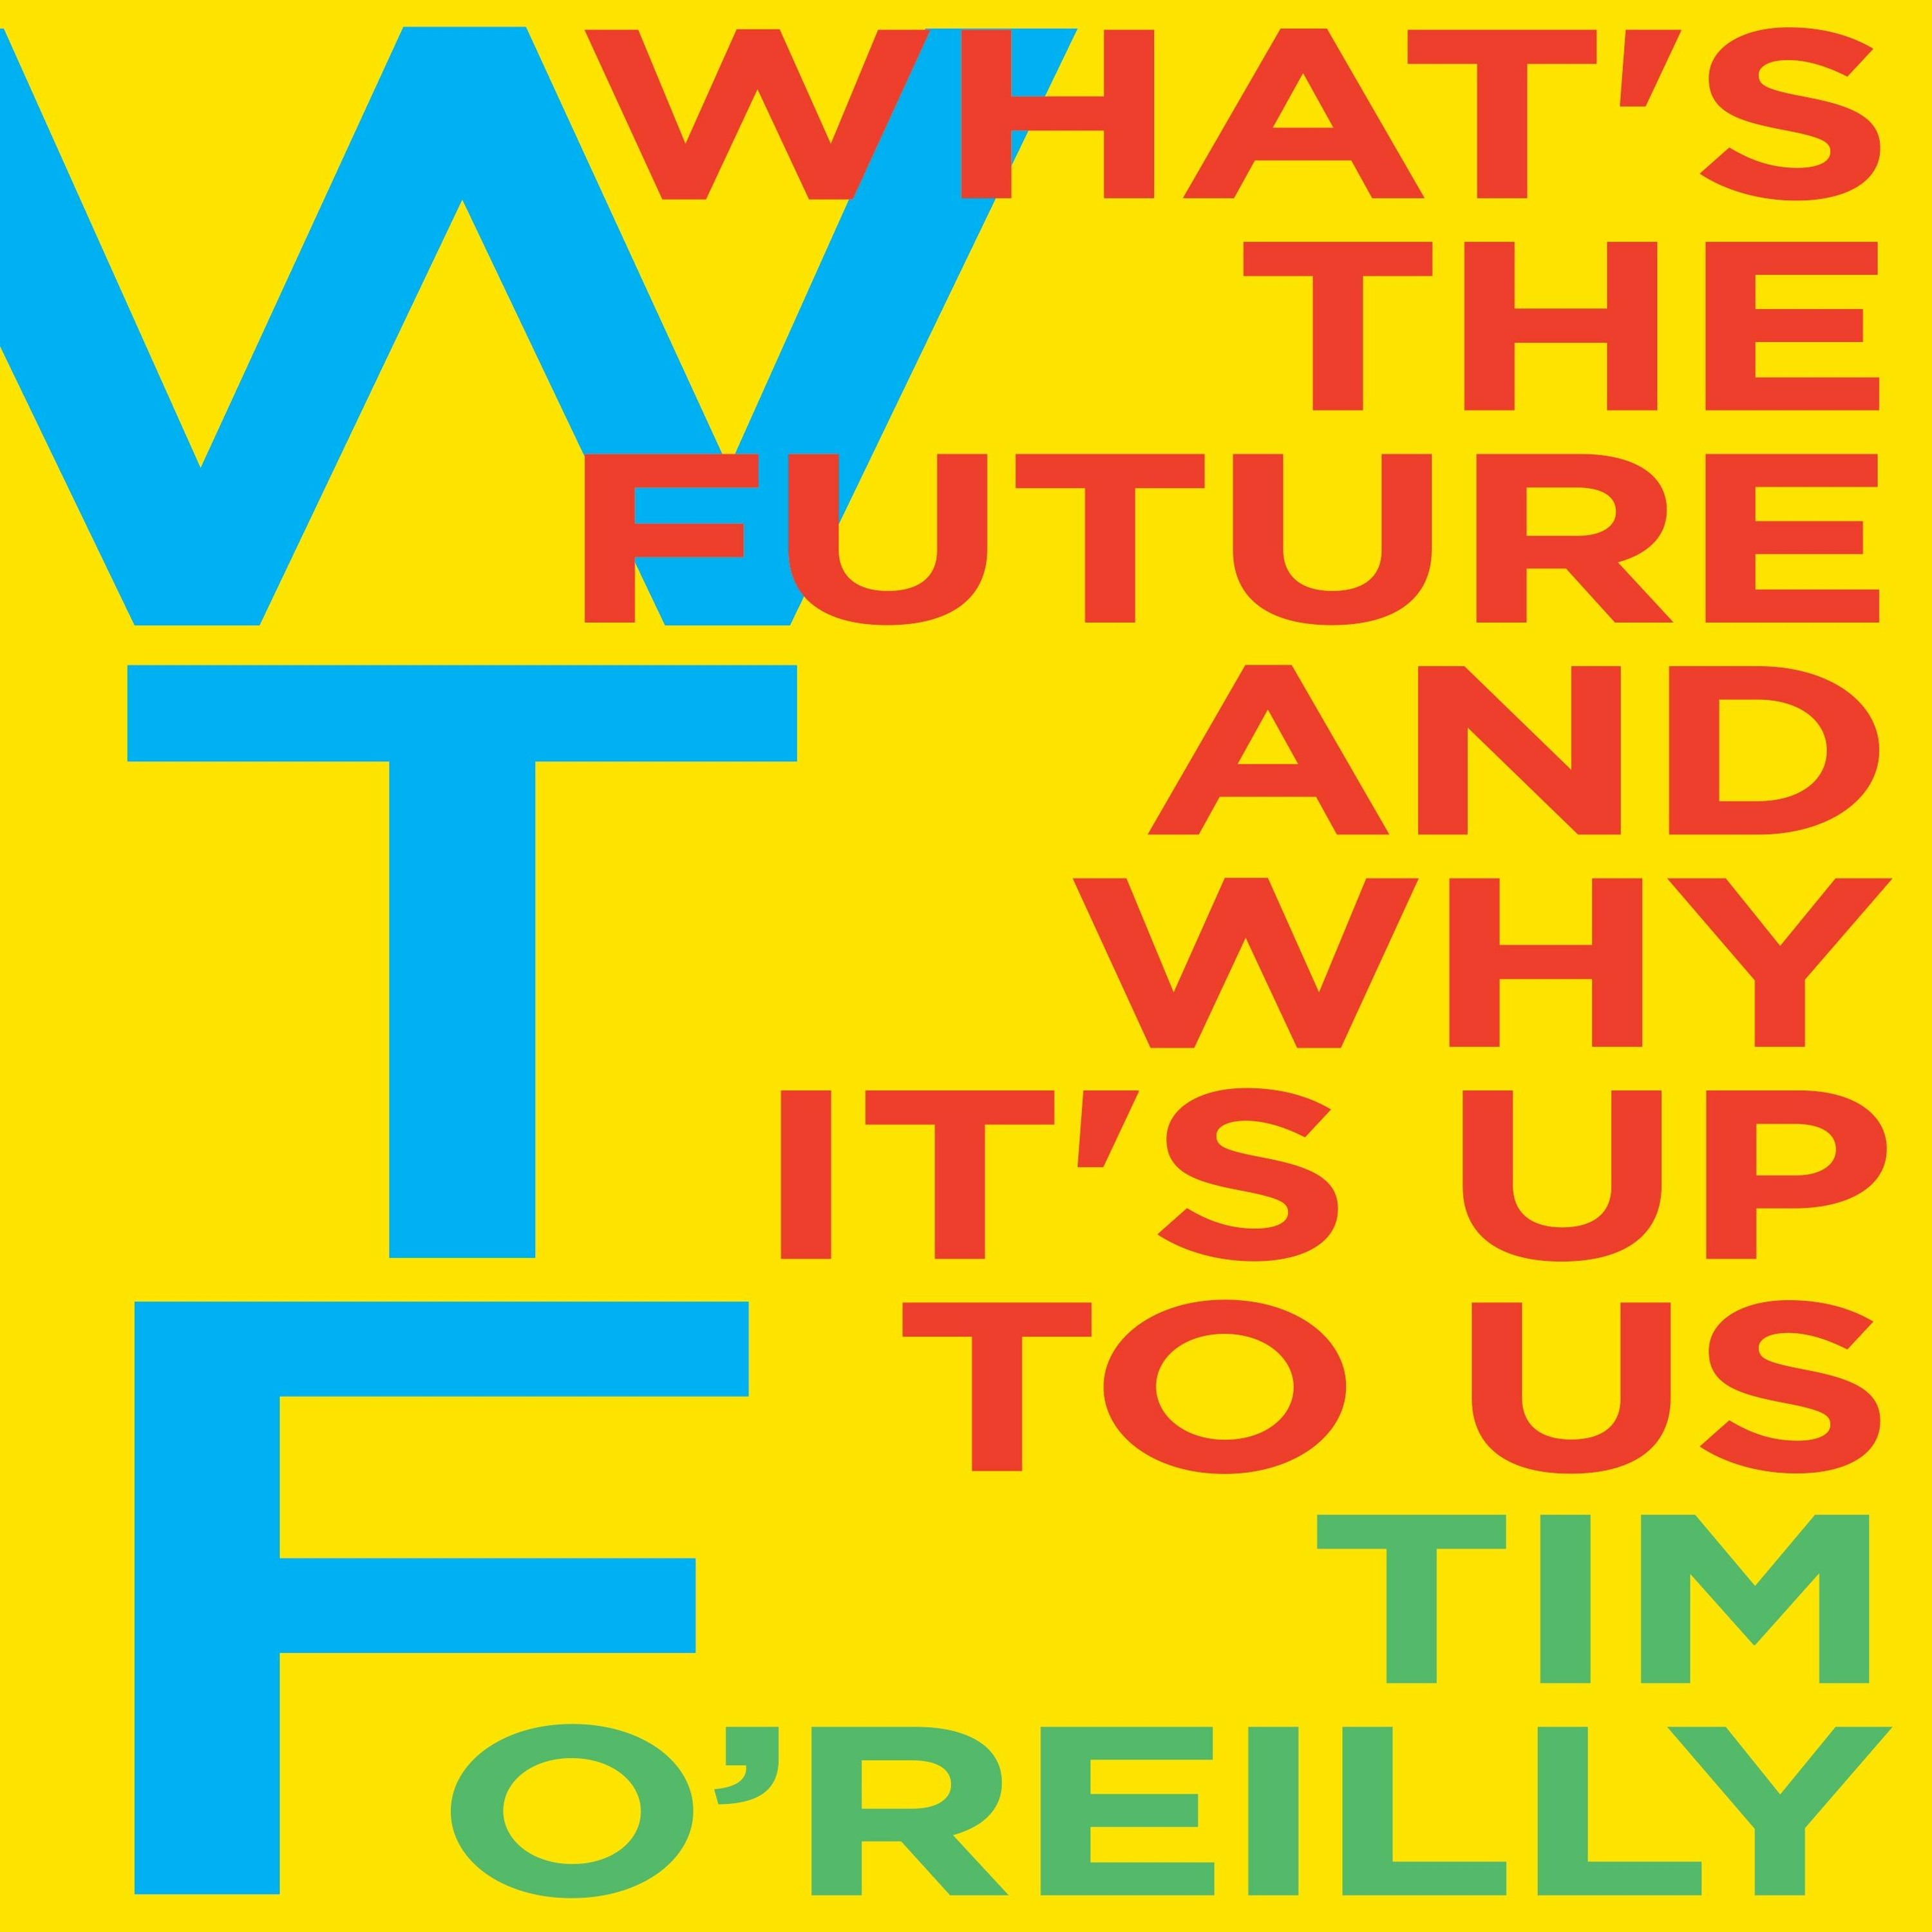 Tim O'Reilly on WTF?